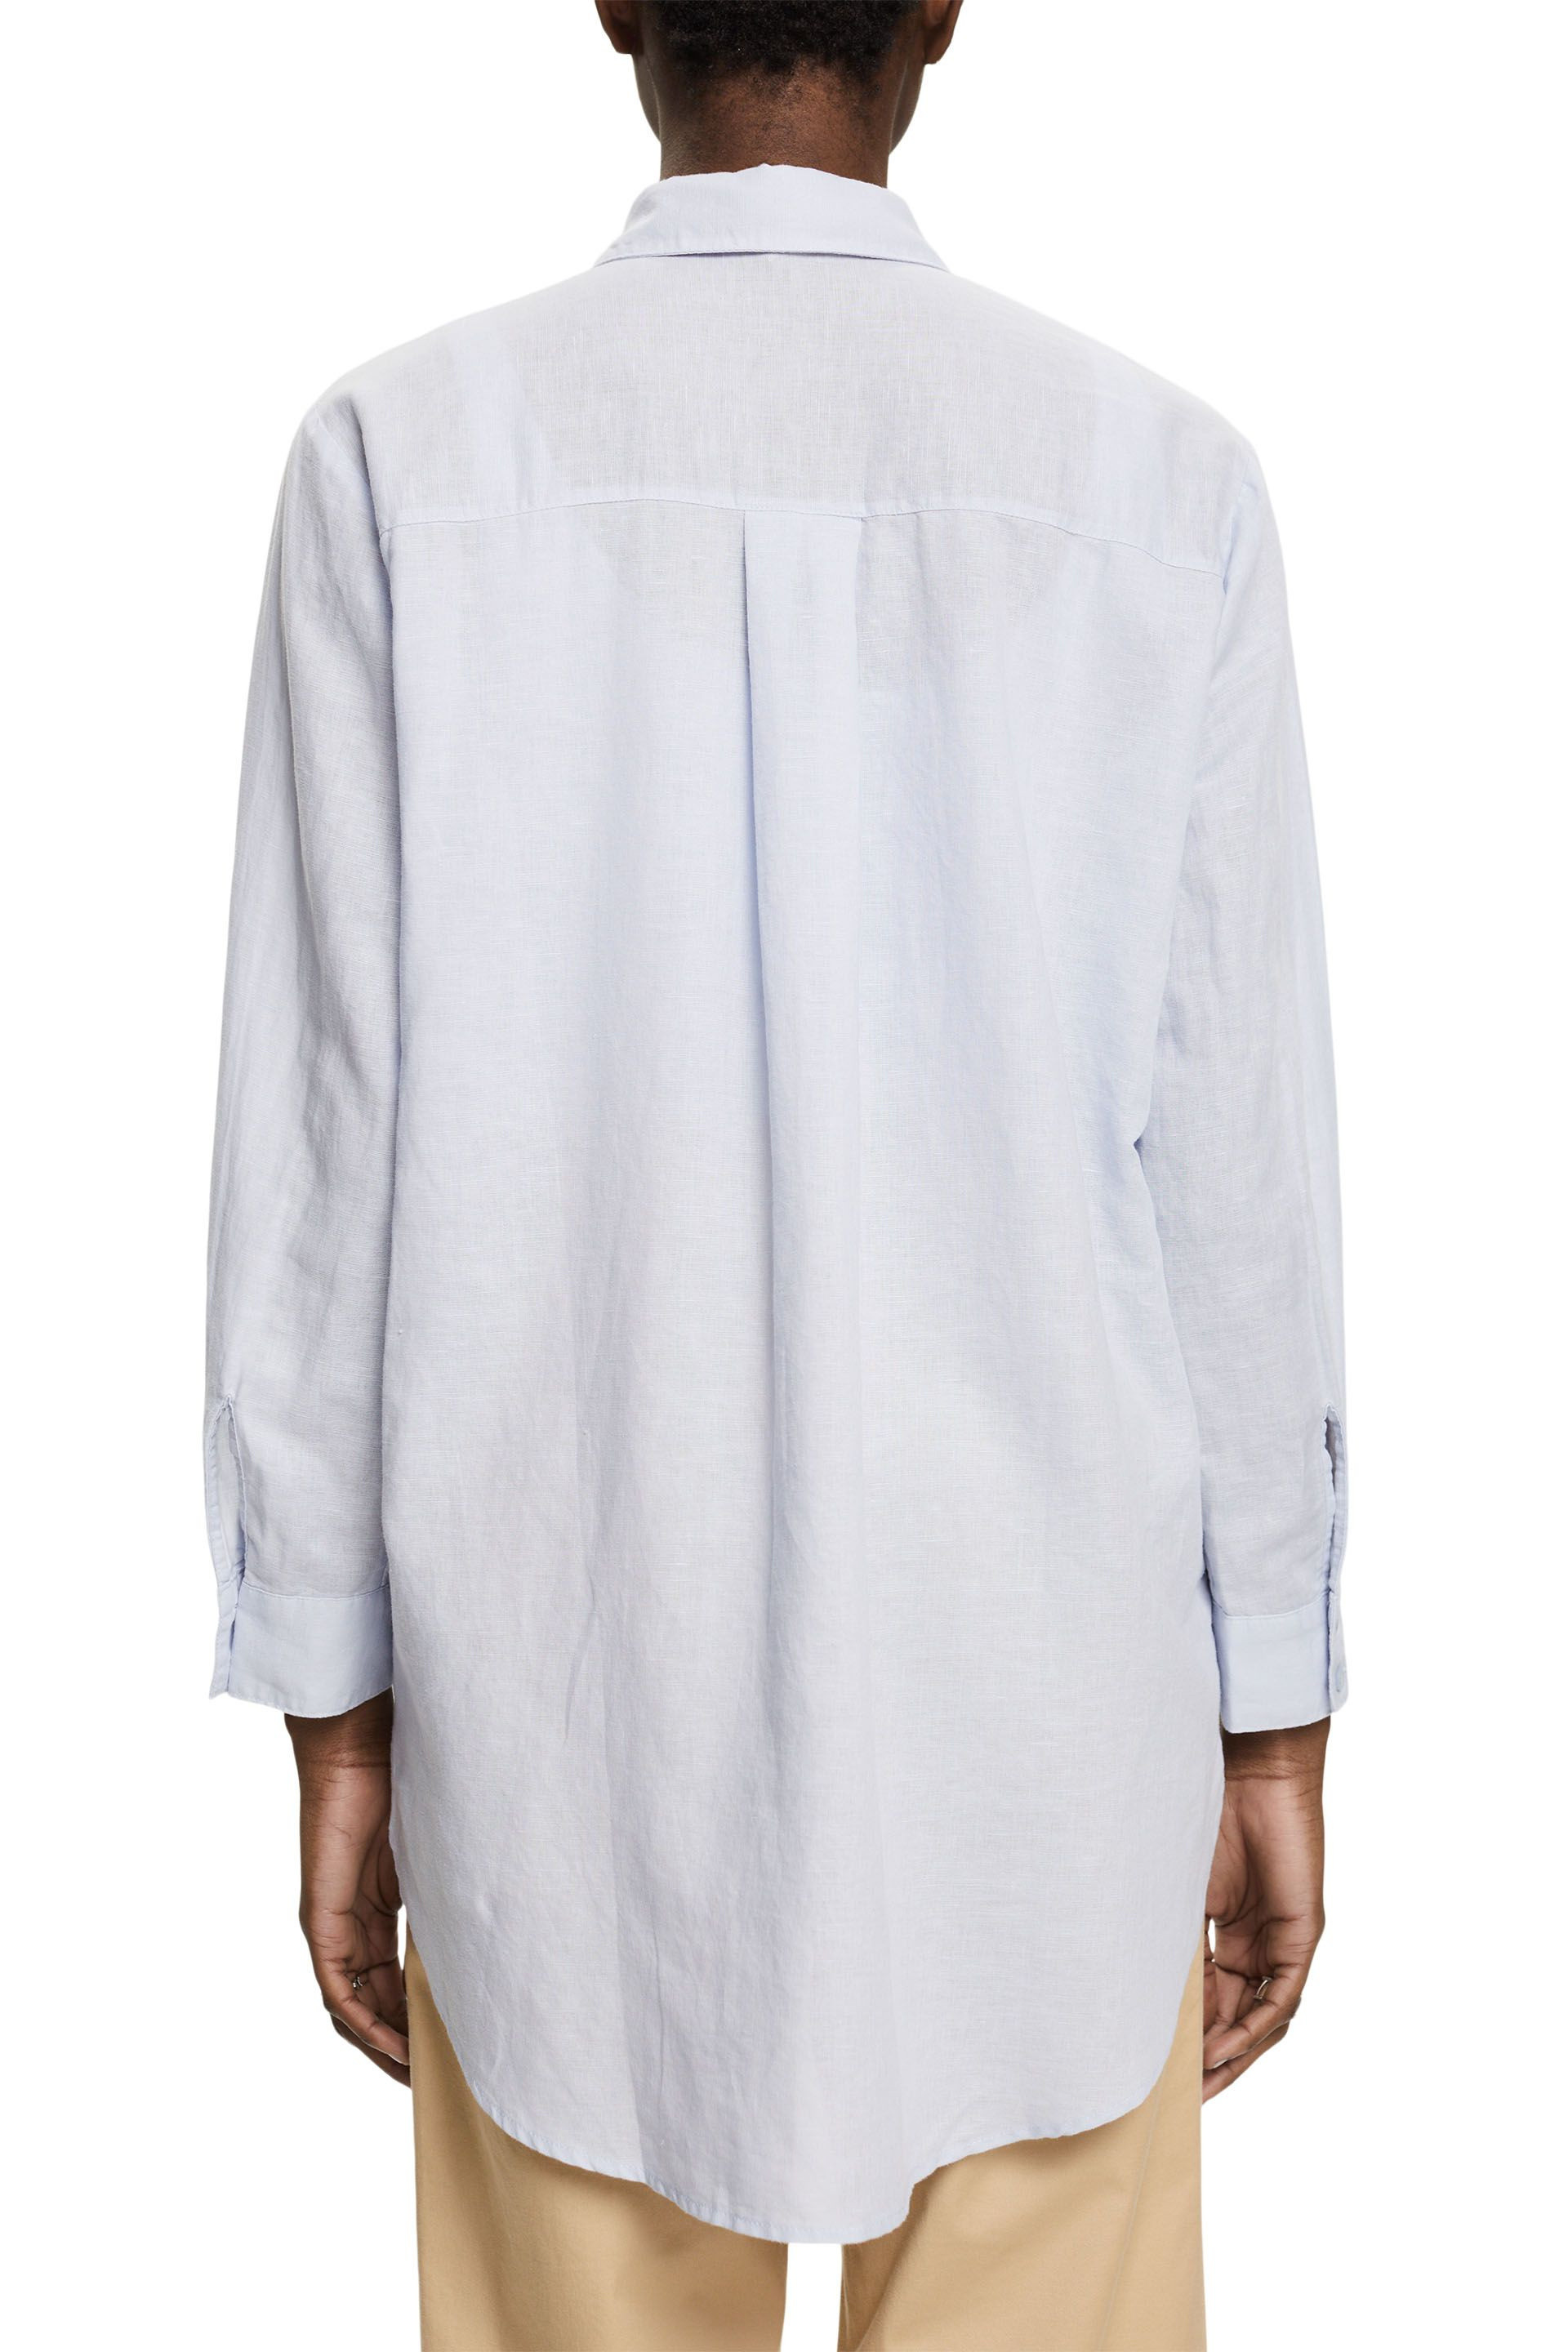 Esprit - Linen blend blouse, Light Blue, large image number 2